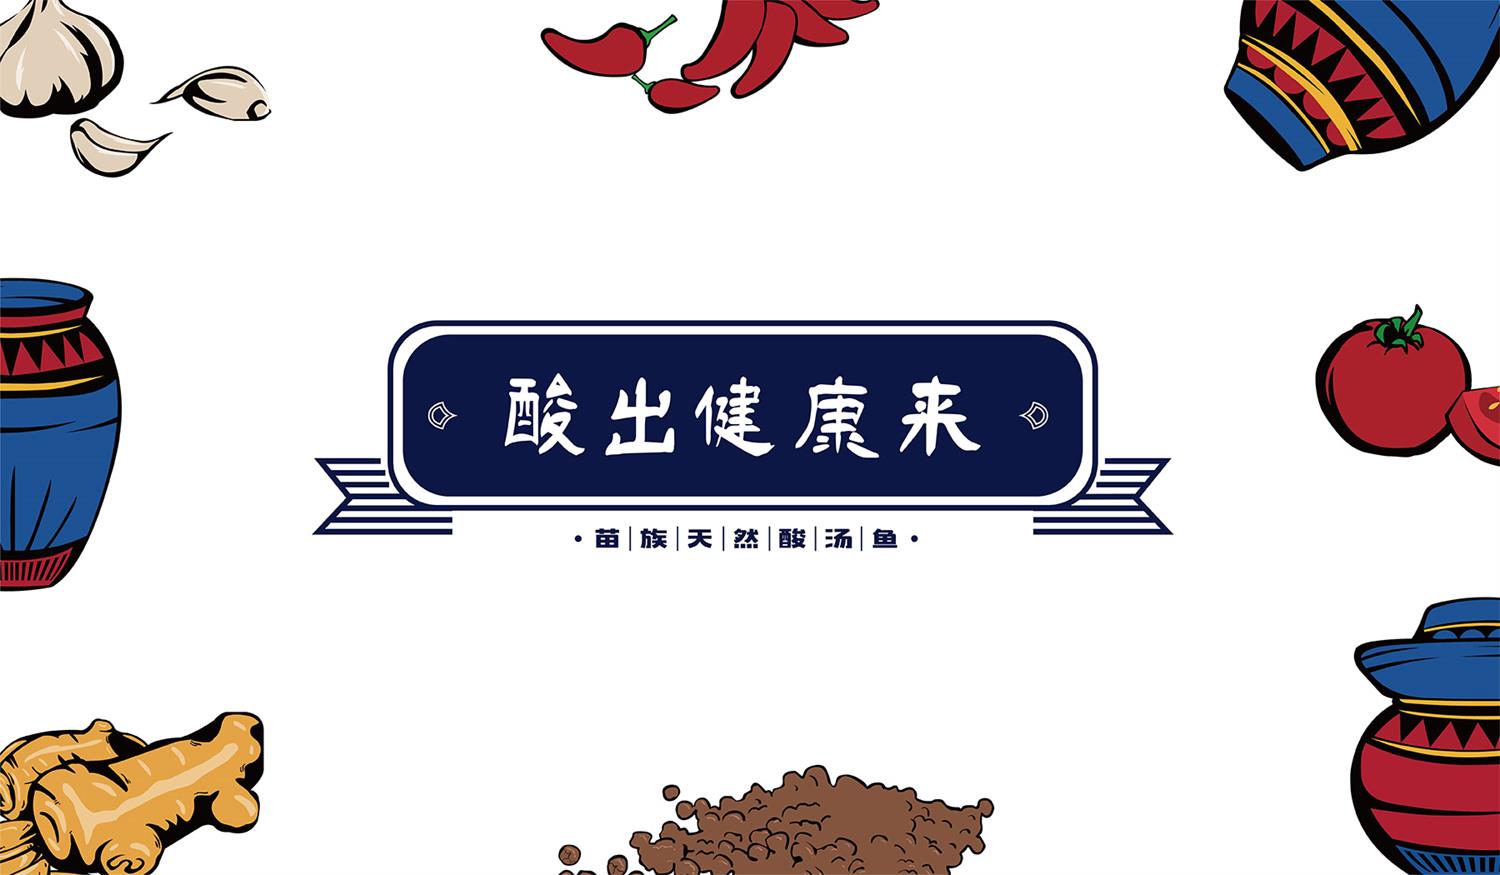 广东酸菜鱼餐饮连锁品牌友黔部落主打广告语